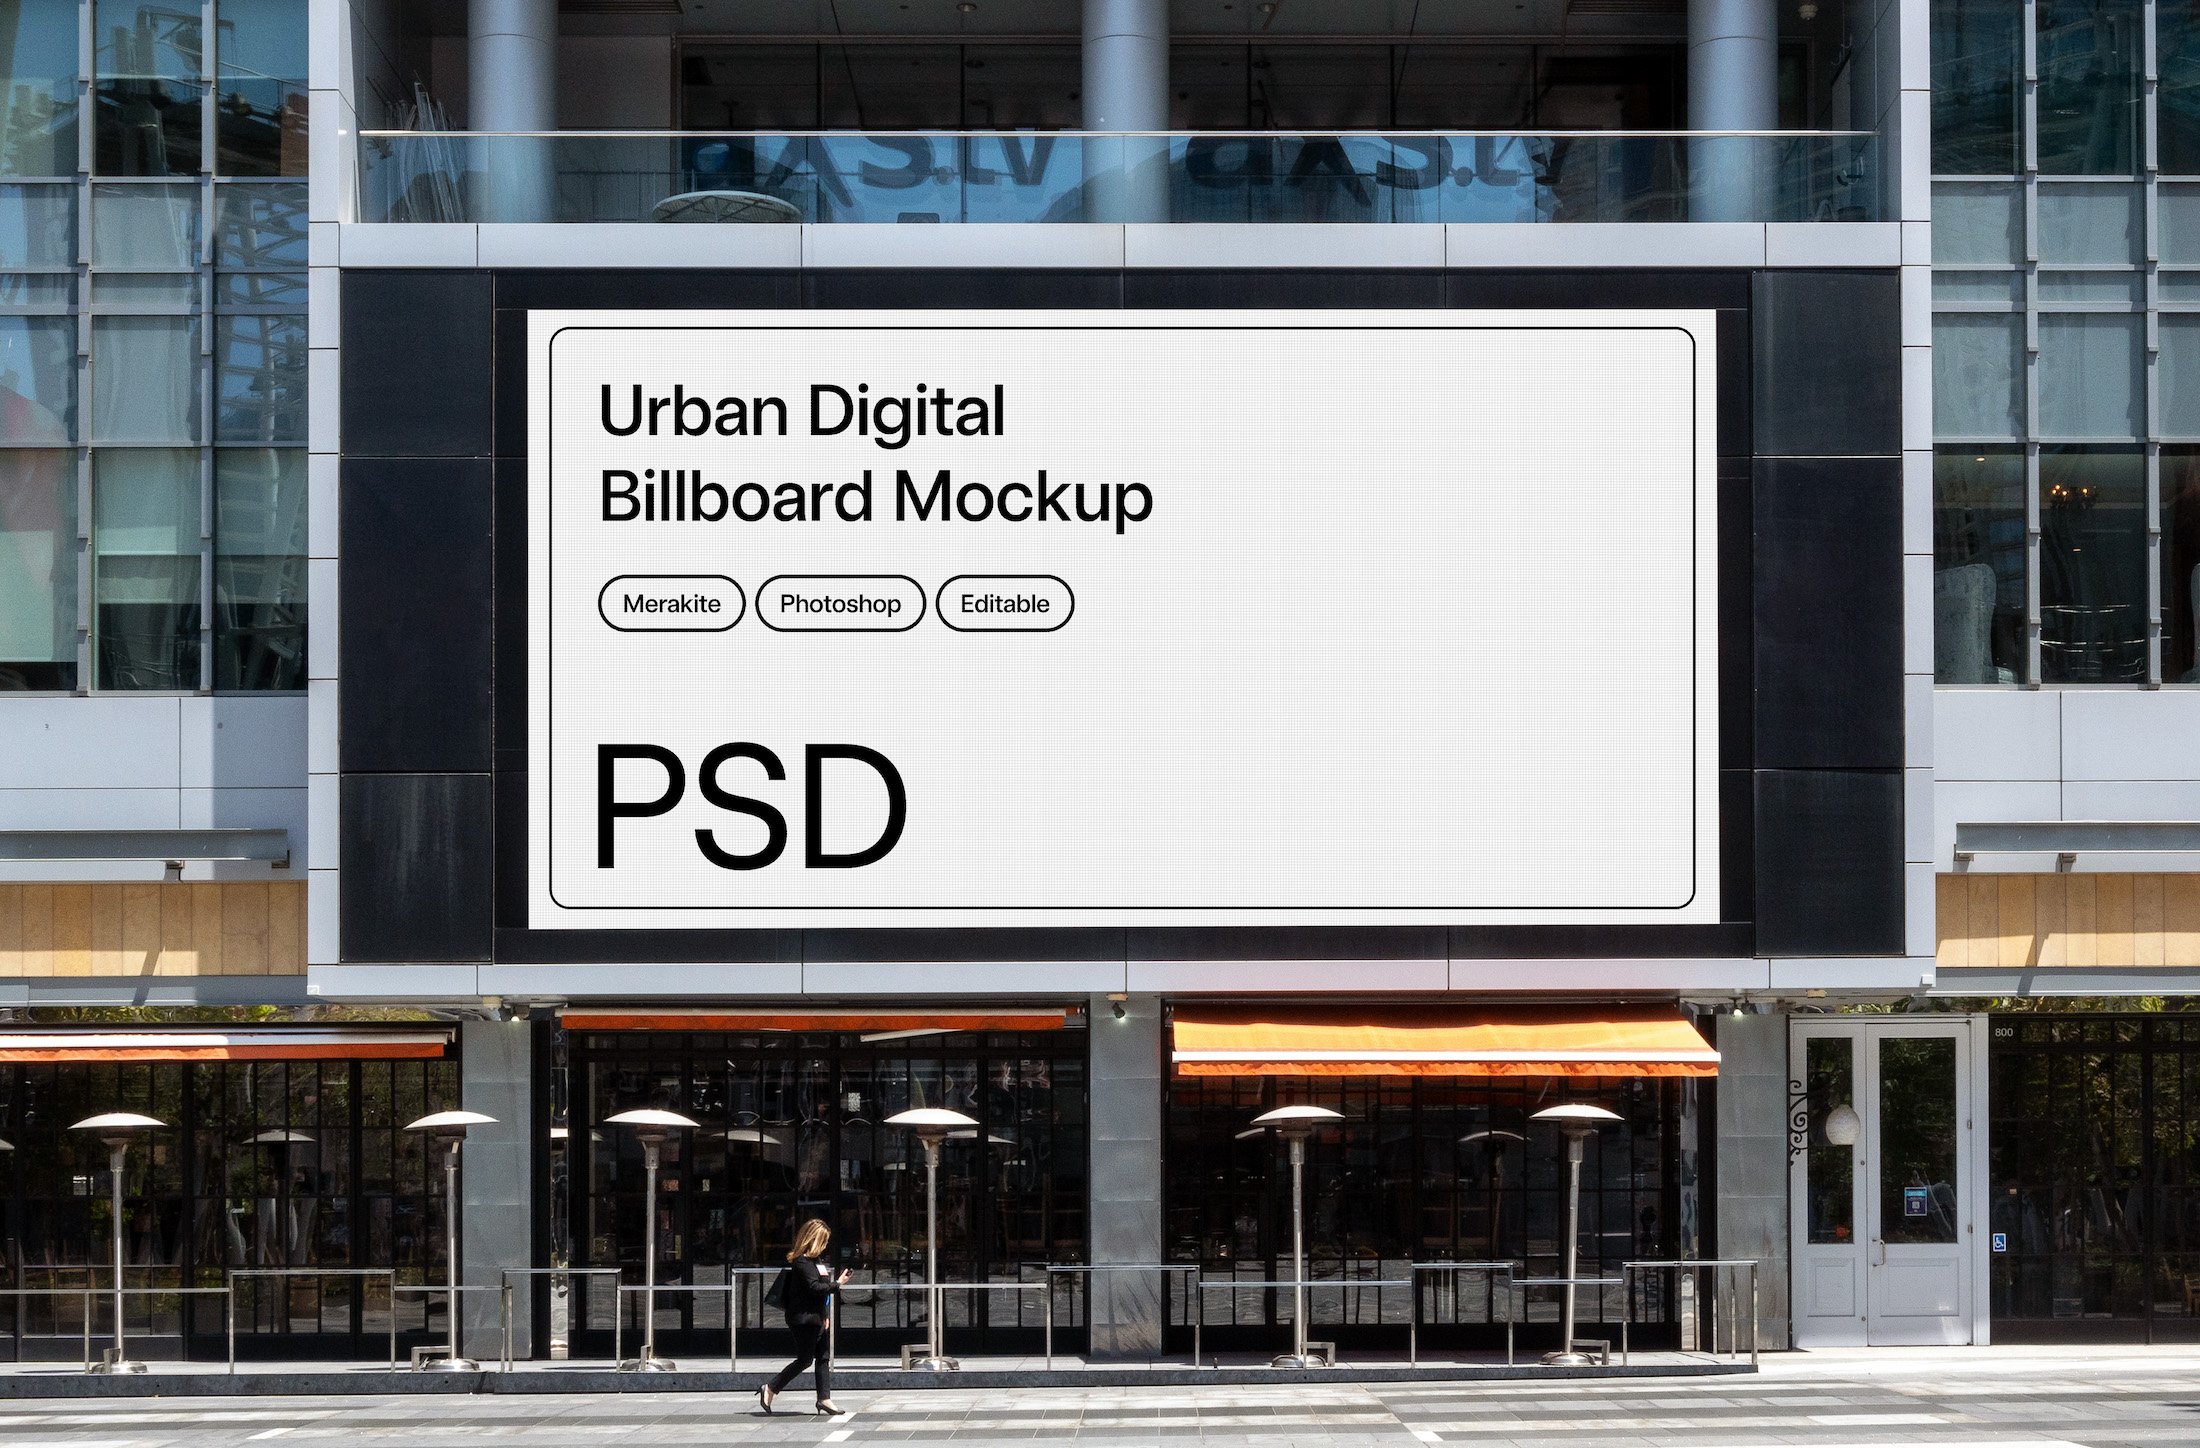 Mega Screen Digital Billboard Mockup cover image.